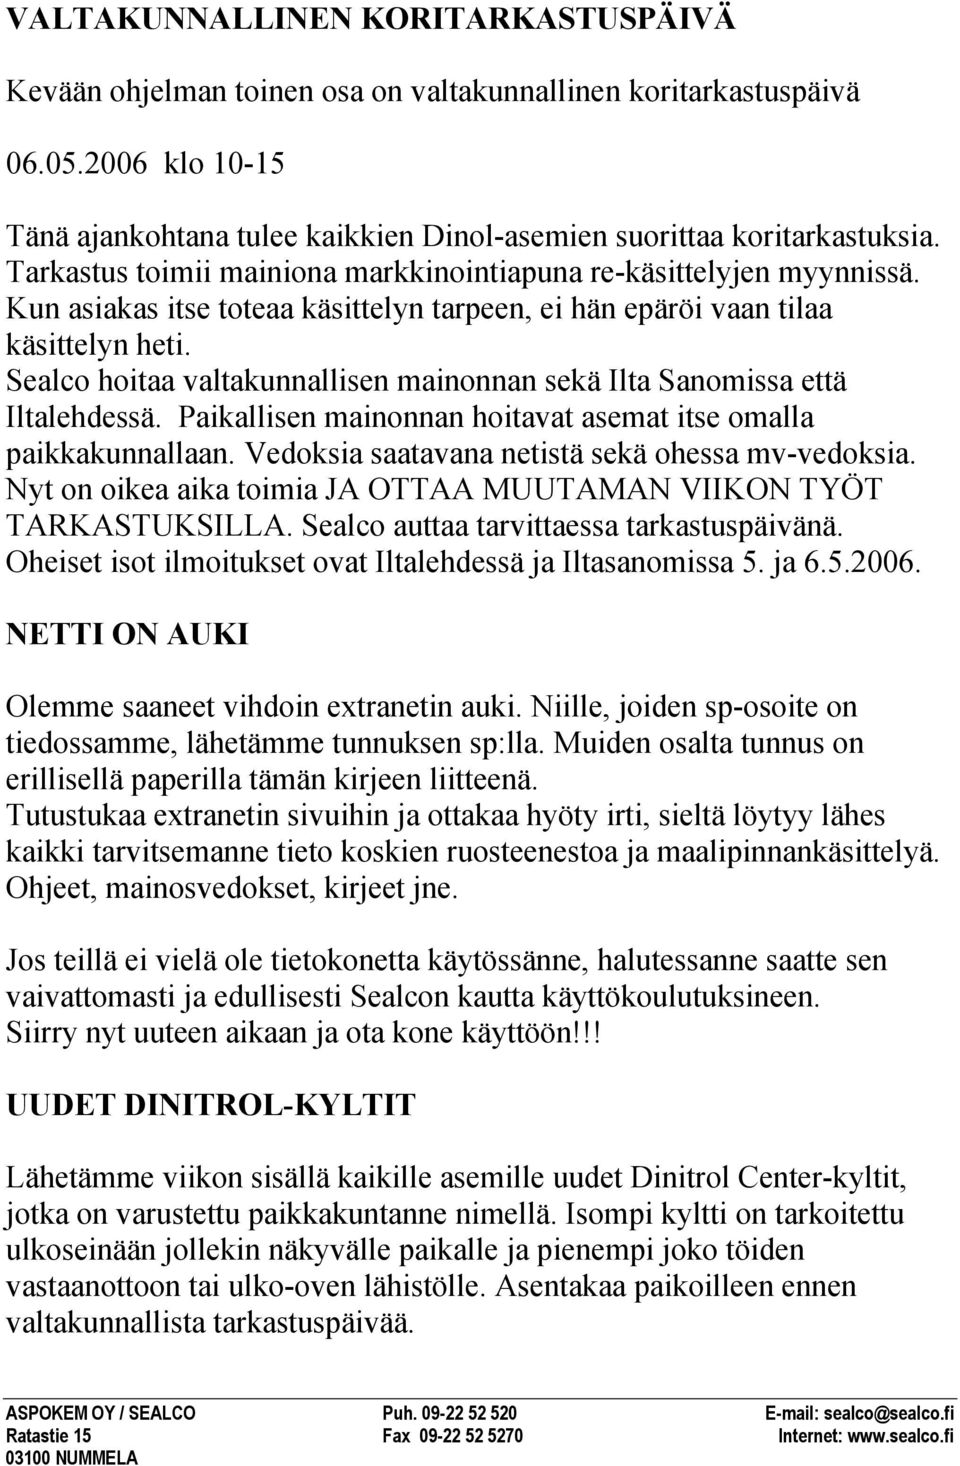 Sealco hoitaa valtakunnallisen mainonnan sekä Ilta Sanomissa että Iltalehdessä. Paikallisen mainonnan hoitavat asemat itse omalla paikkakunnallaan. Vedoksia saatavana netistä sekä ohessa mv-vedoksia.